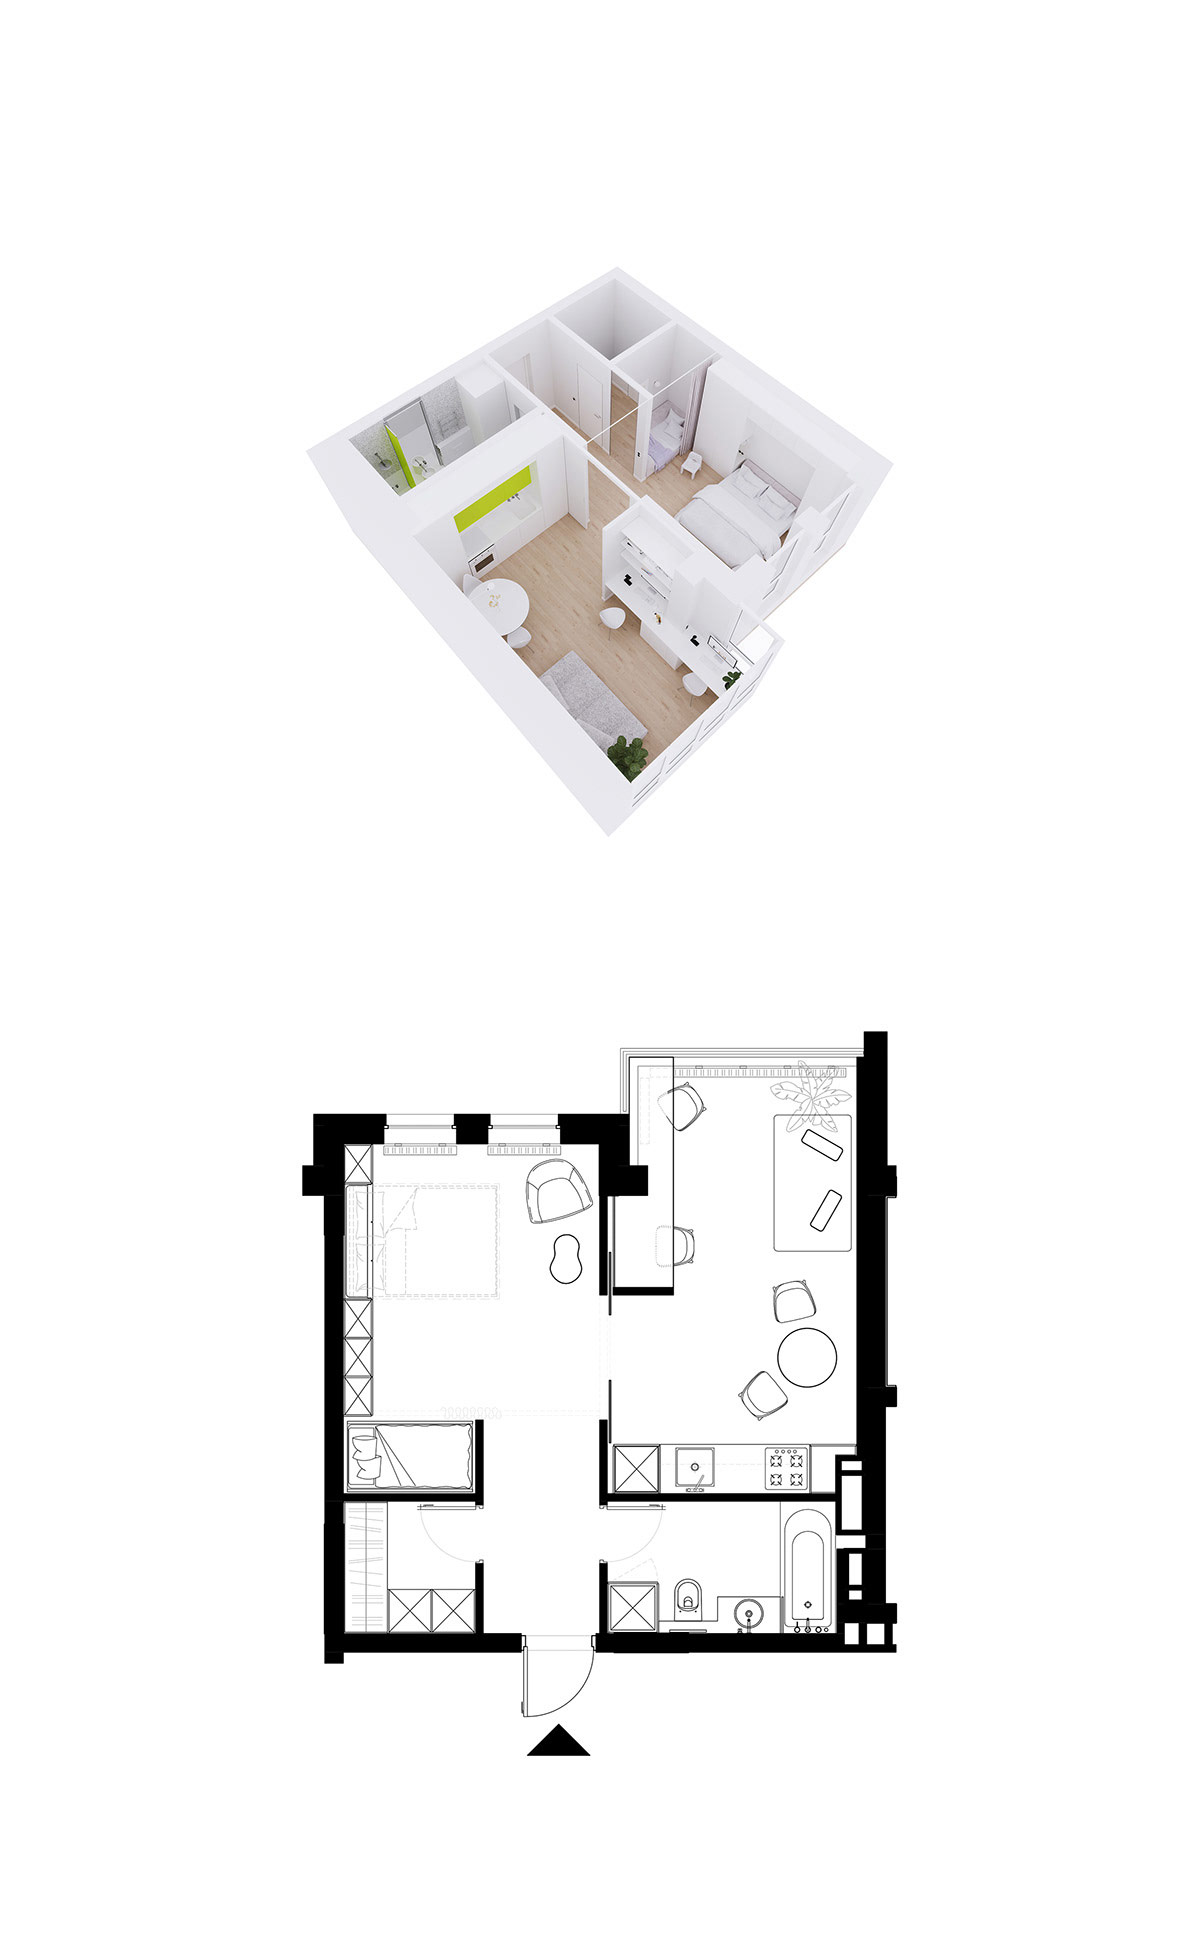 4个简约纯净的白色公寓设计